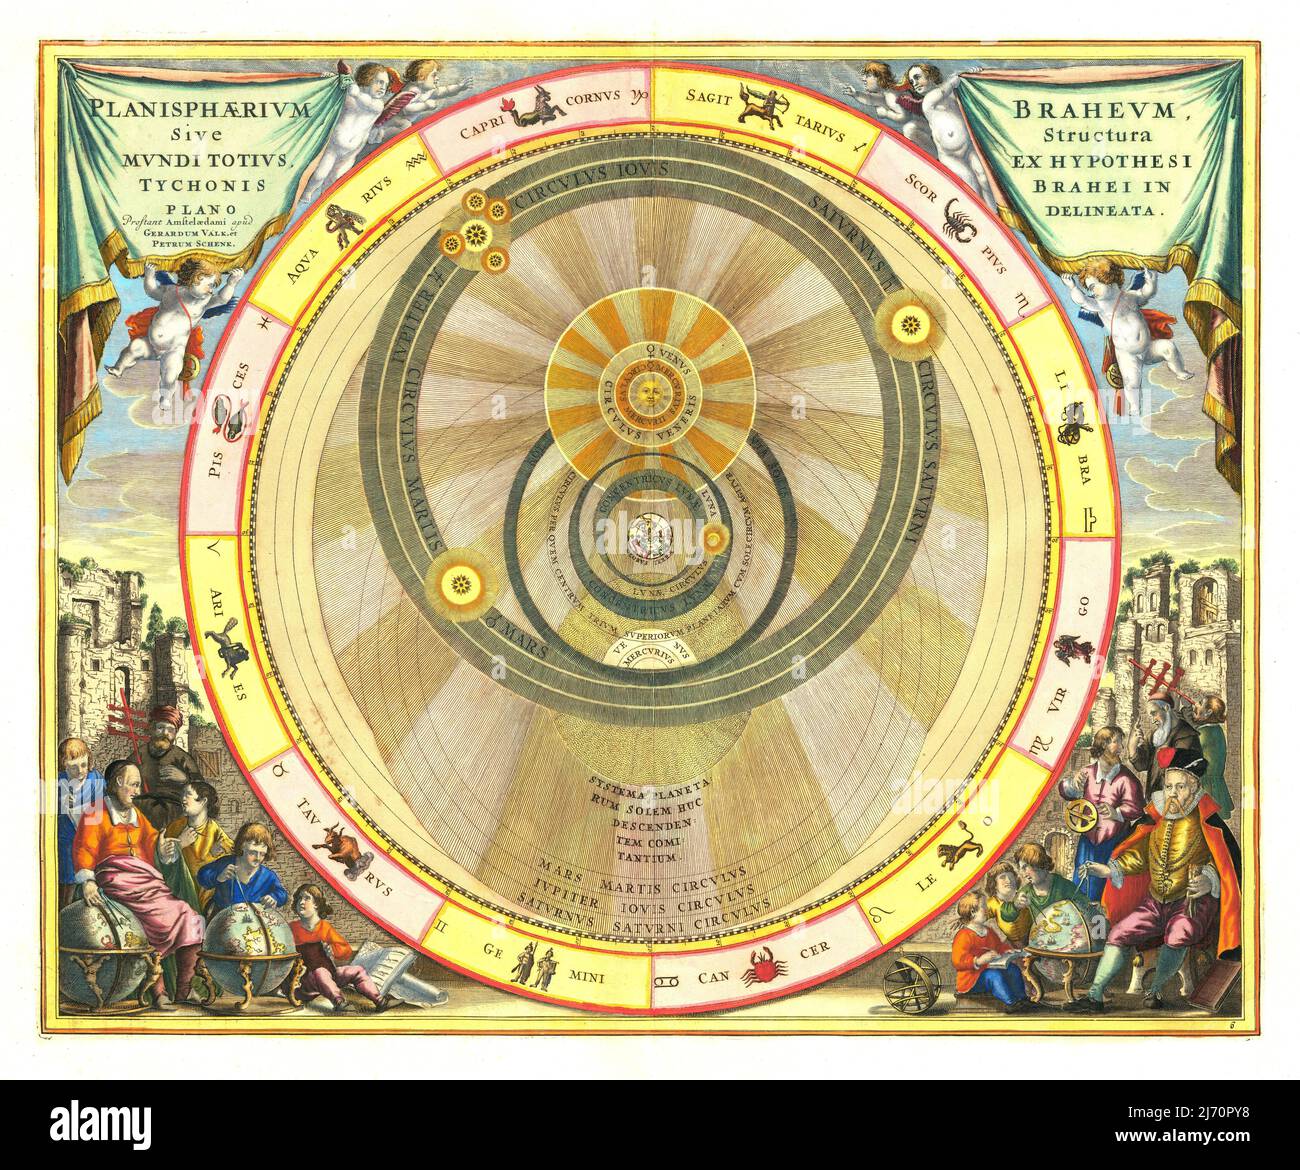 Andreas Cellarius - El plano de Braheum: O la estructura del mundo en un plano delineado - Ilustración del modelo de Tycho Brahe del universo - c1661 Foto de stock